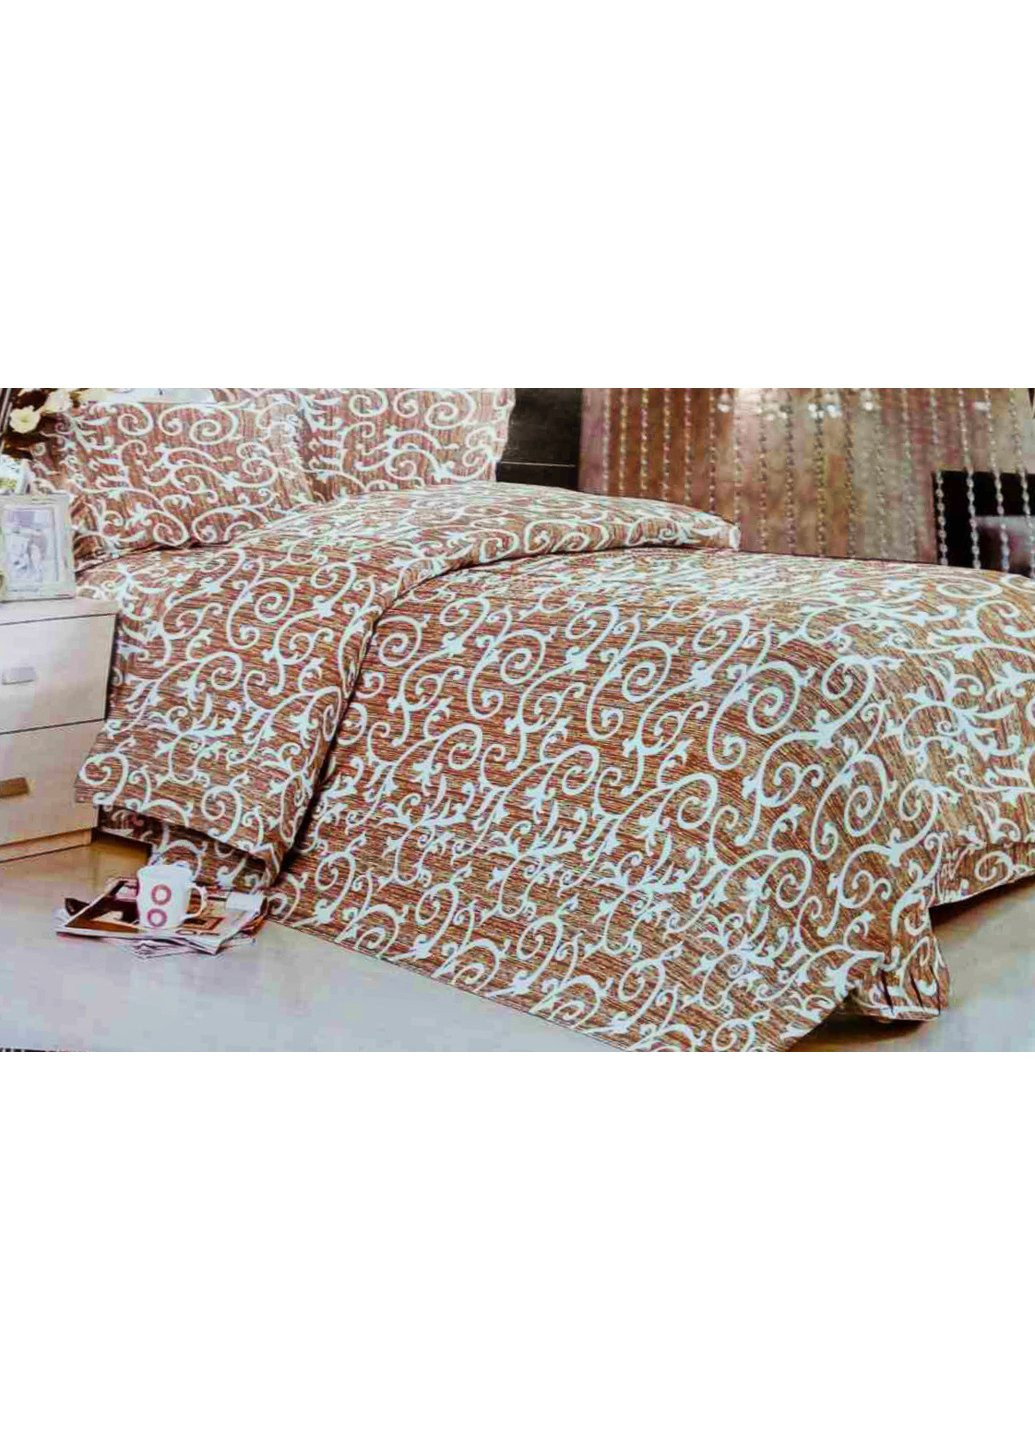 Комплект постельного белья от украинского производителя Polycotton Полуторный 90967 Moda (254861255)